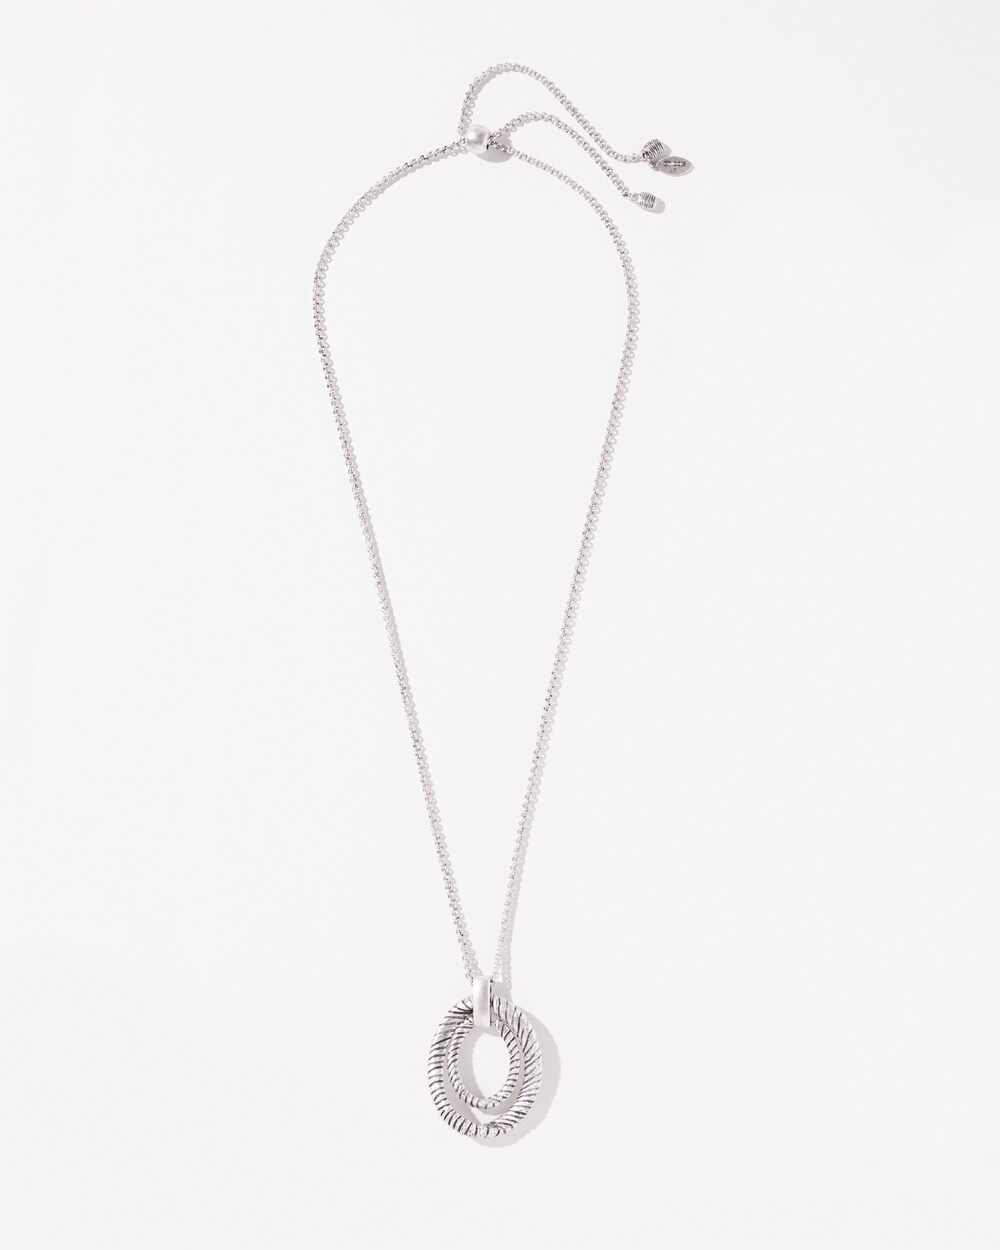 Silver Tone Adjustable Necklace